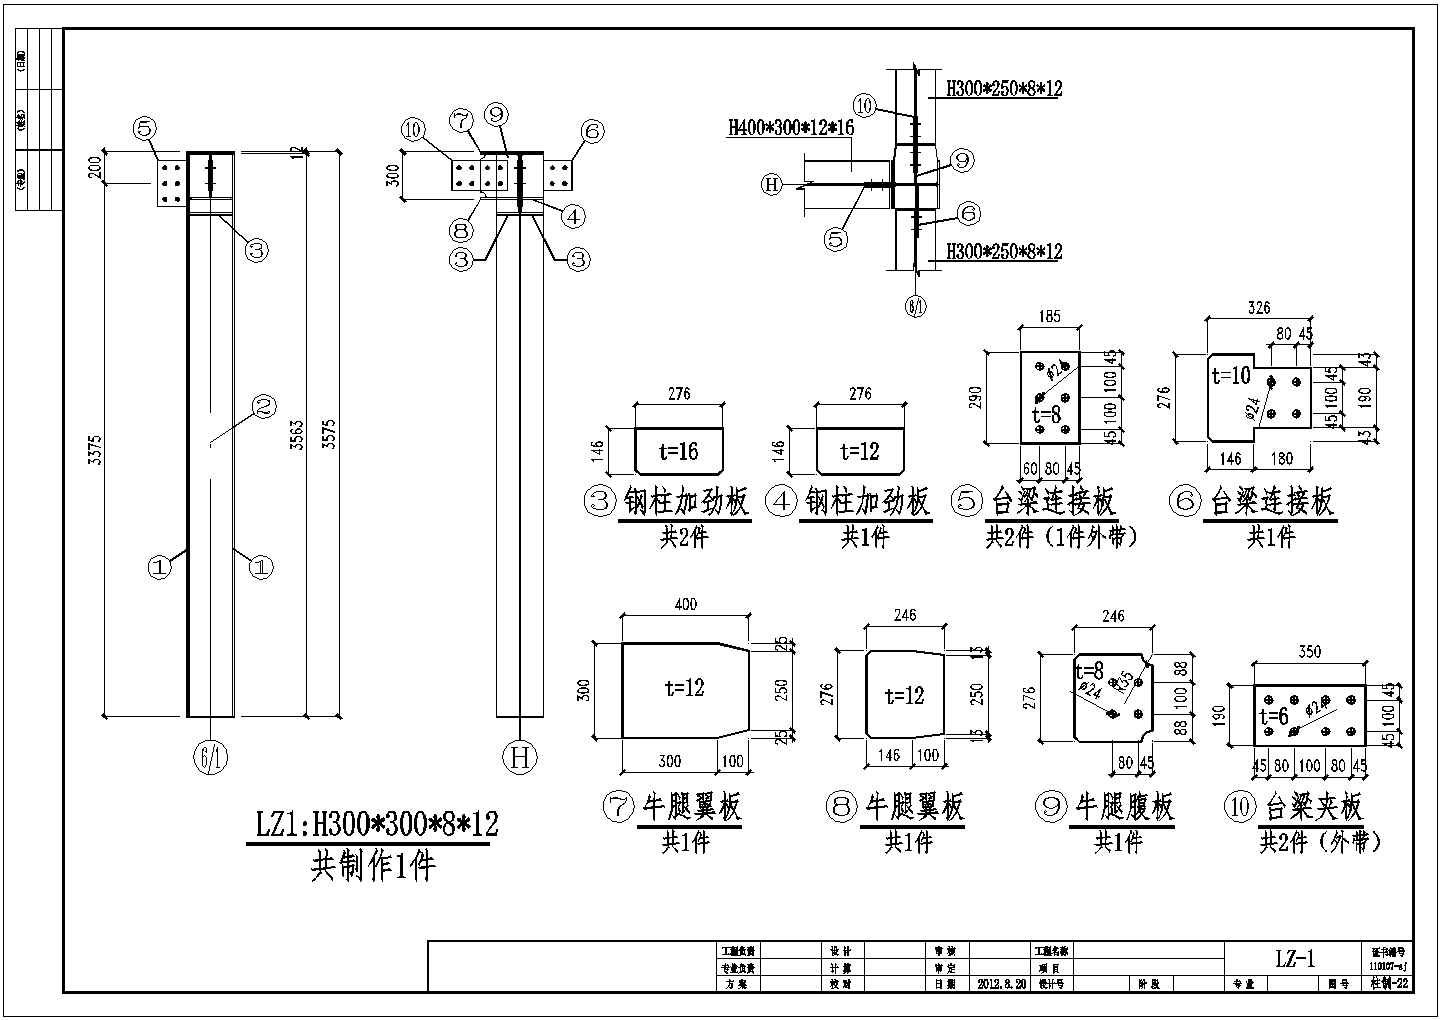 中庭及连廊钢框架结构施工图(含深化设计图)